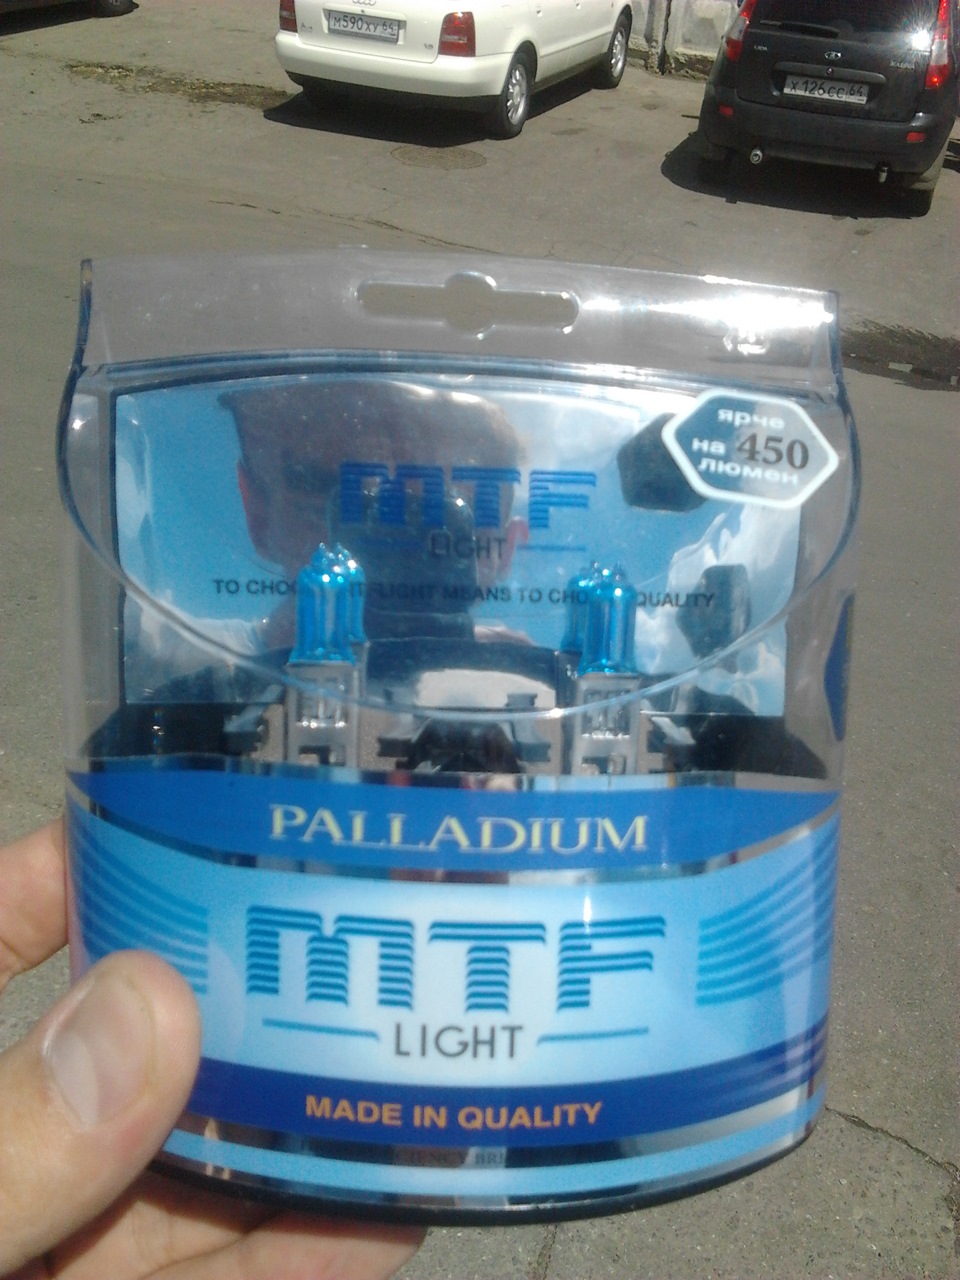 Ближний свет 5490. МТФ Палладиум Ближний и Дальний свет. MTF Light с AFS установка.